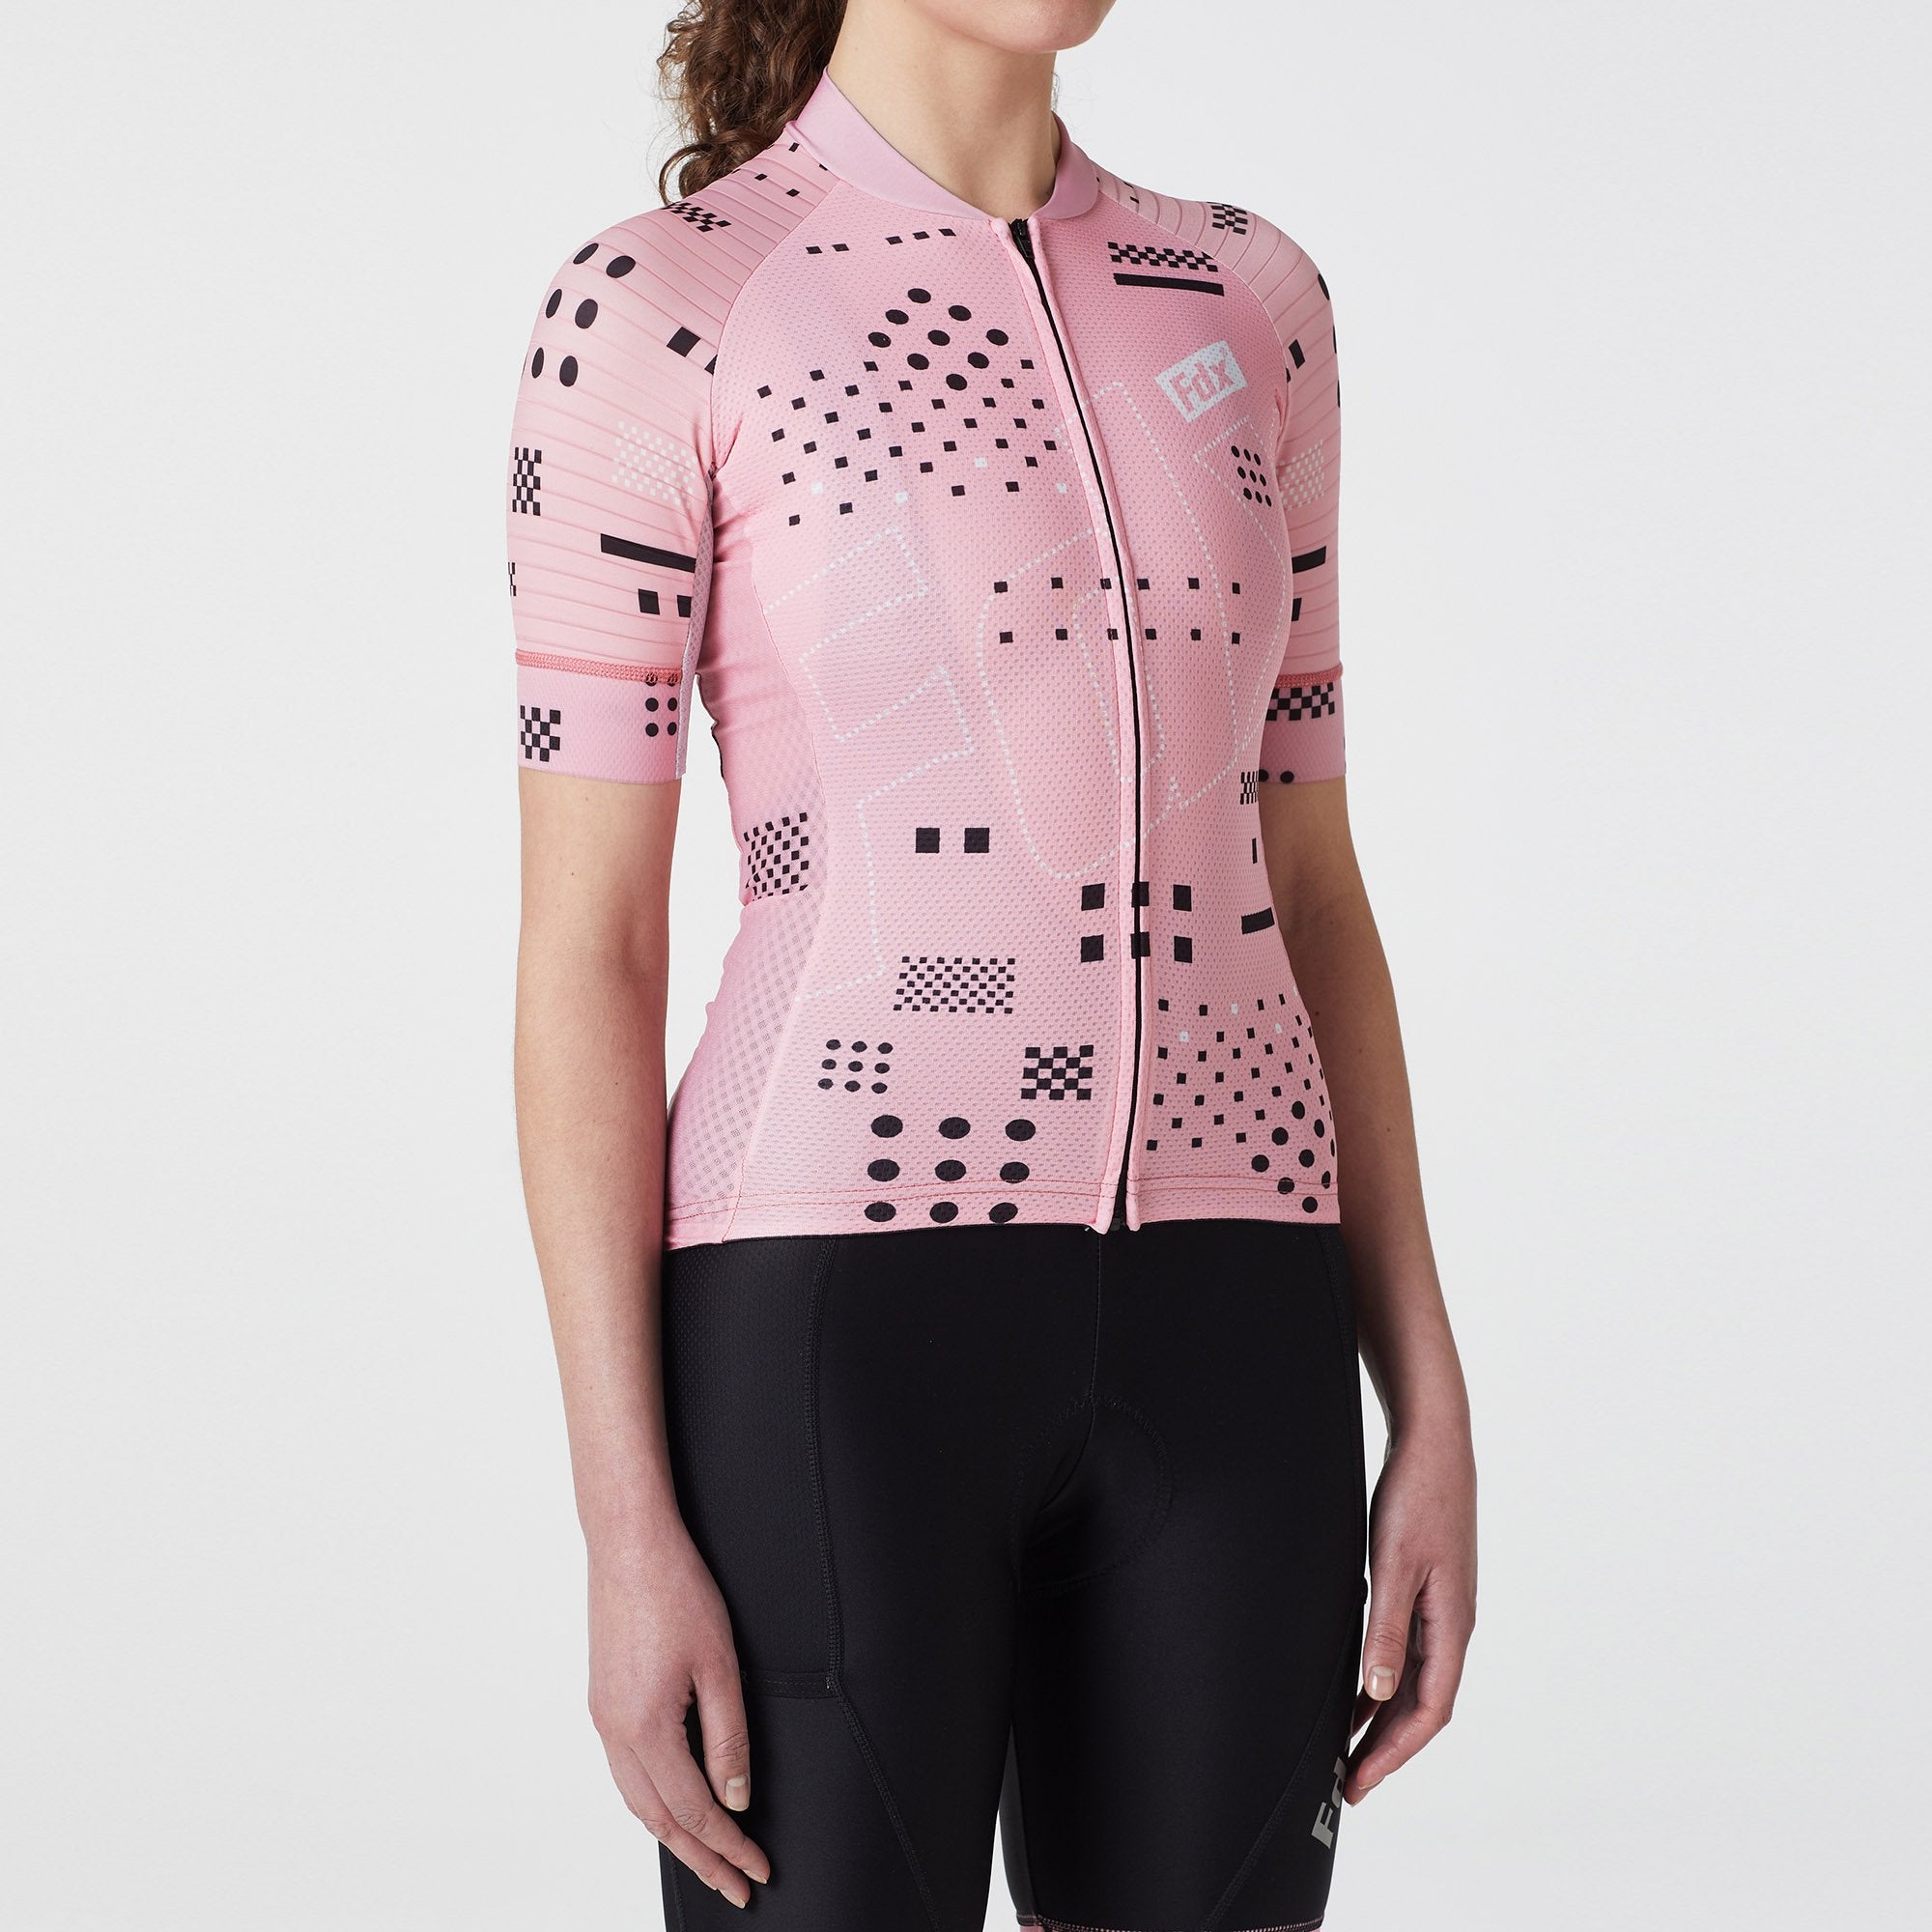 Fdx Women's Tea pink Short Sleeve Cycling Jersey for Summer Best Road Bike Wear Top Light Weight, Full Zipper, Pockets & Hi-viz Reflectors - All Day